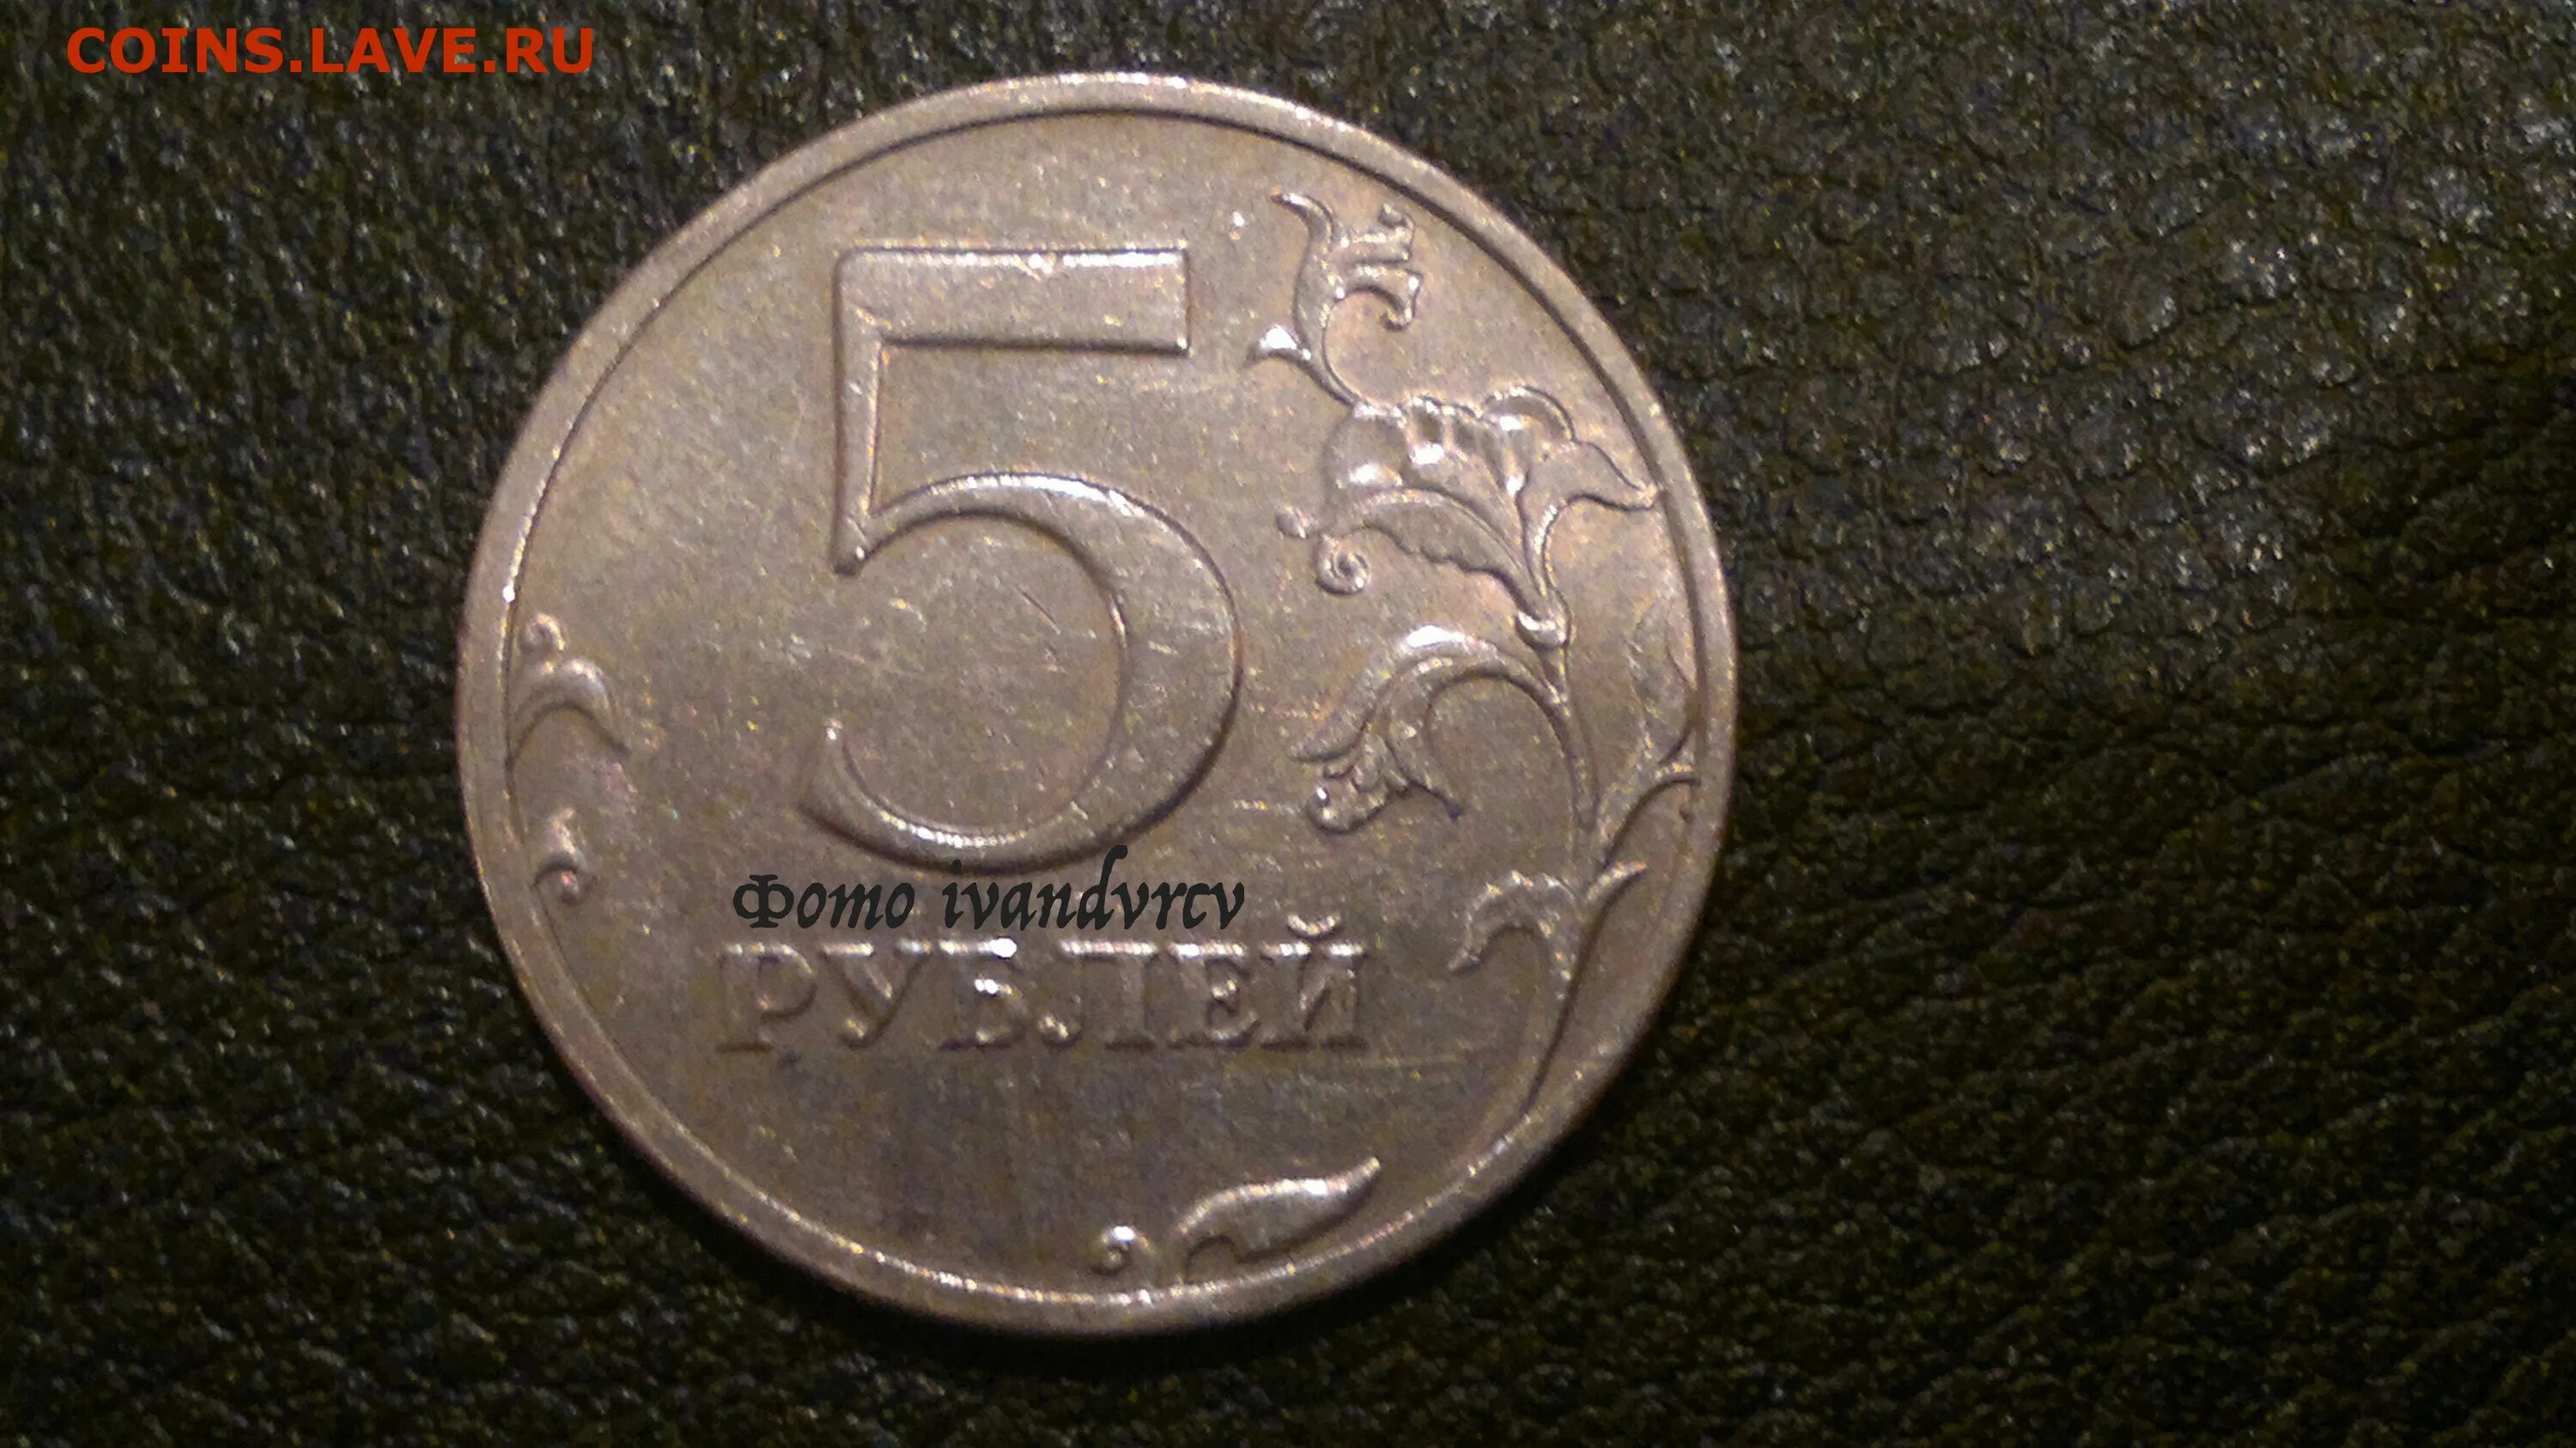 5 рублей новгород 1997. 5 Рублей 1997 СПМД. 5 Рублей 1997 СПМД шт 3. 5 Рублей 1997 СПМД штемпель 2.3. 5 Рублей 1997 штемпель 2.3 (с малой точкой).